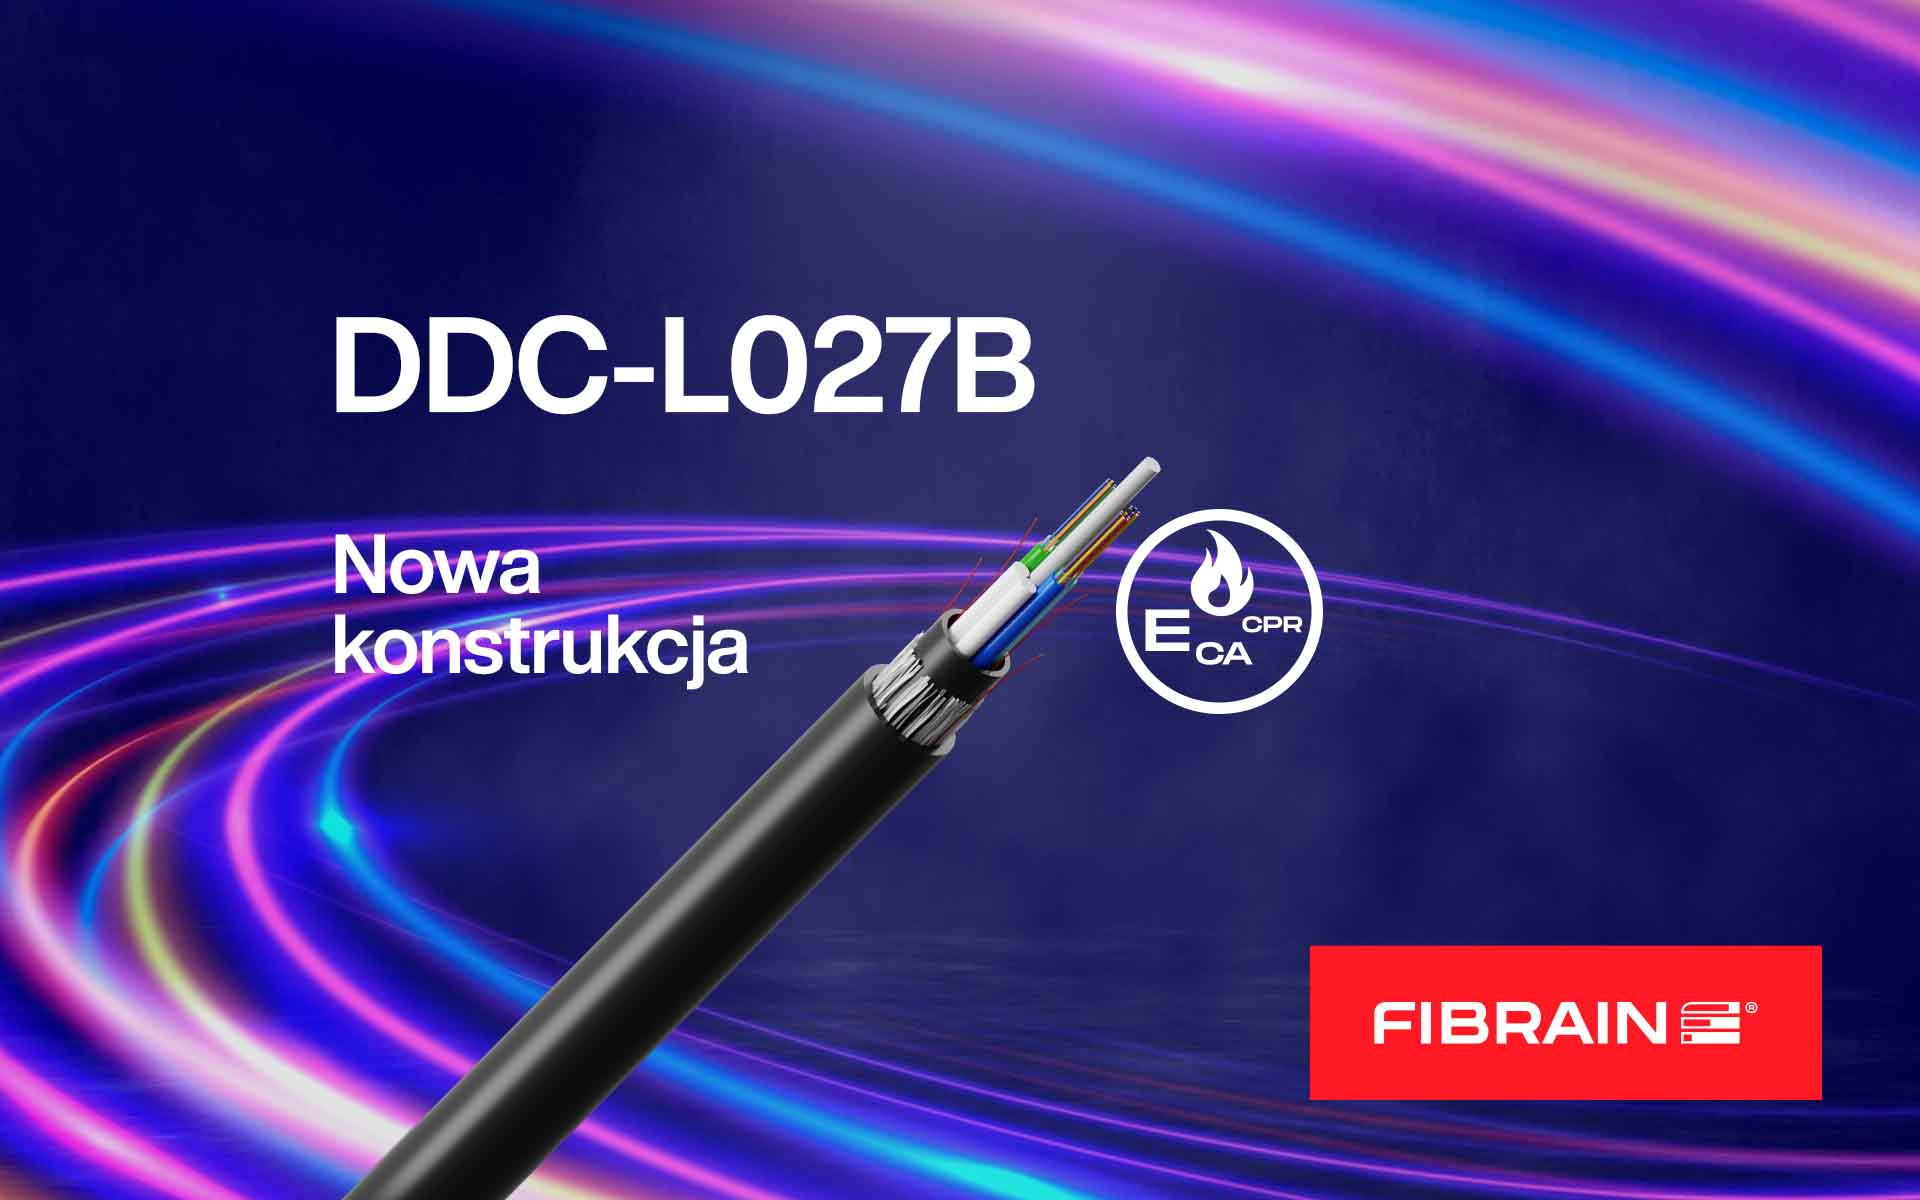 Nowa konstrukcja kabla DDC-L027B!